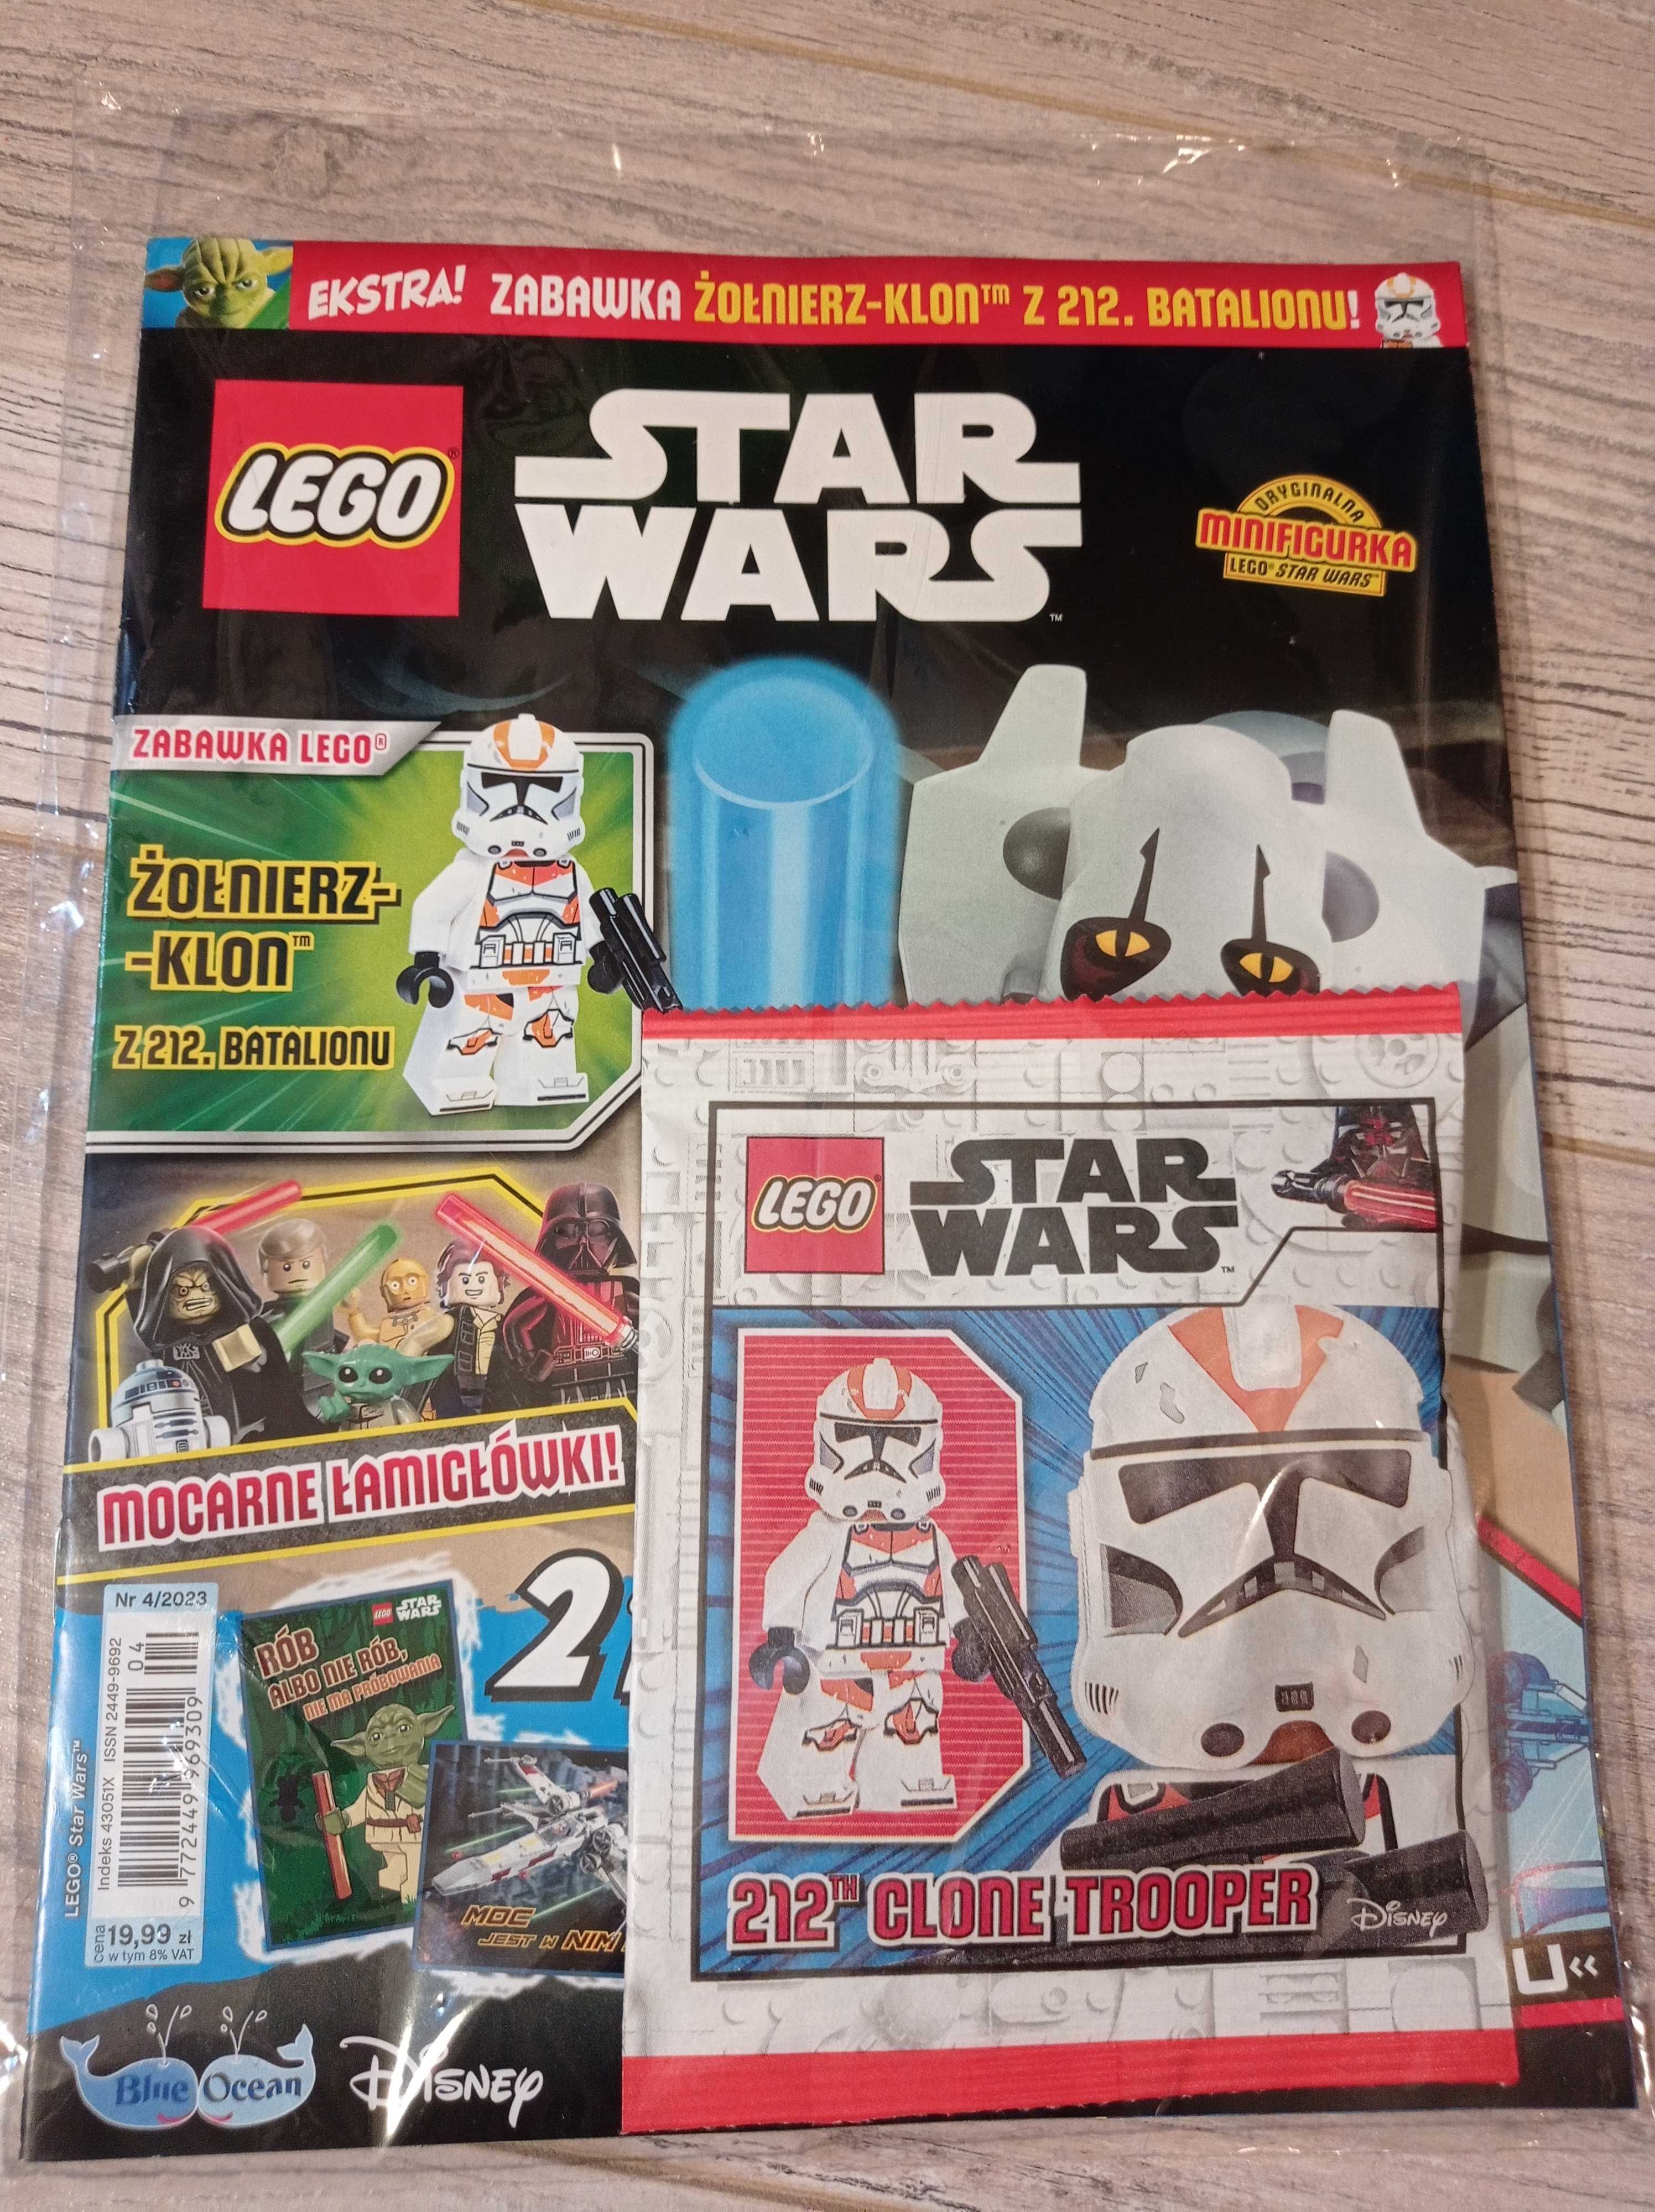 LEGO star wars klon 212 clone trooper magazyn gazeta